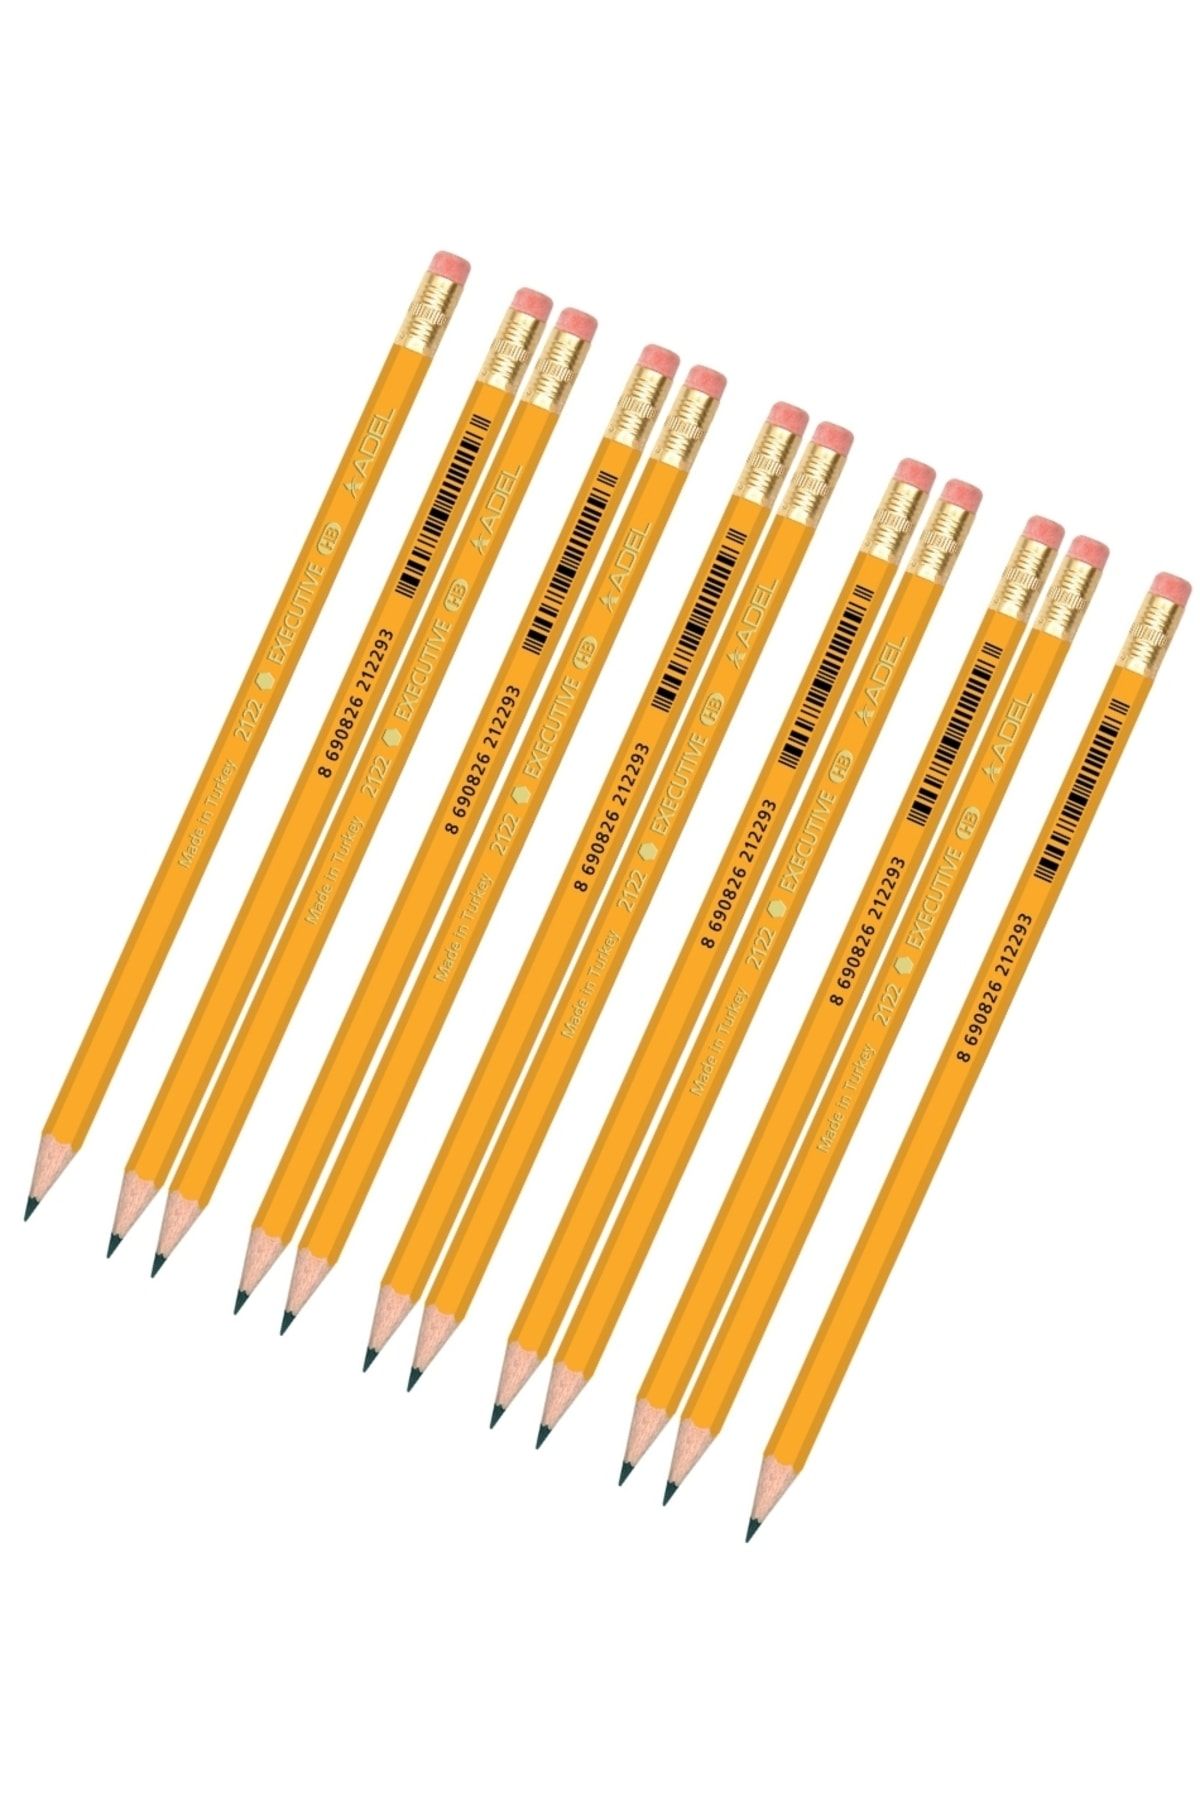 Adel 12 Adet Silgili Kurşun Kalem Klasik Sarı Hb Kutulu Dünyanın En Çok Kullanılan Kalem Modeli